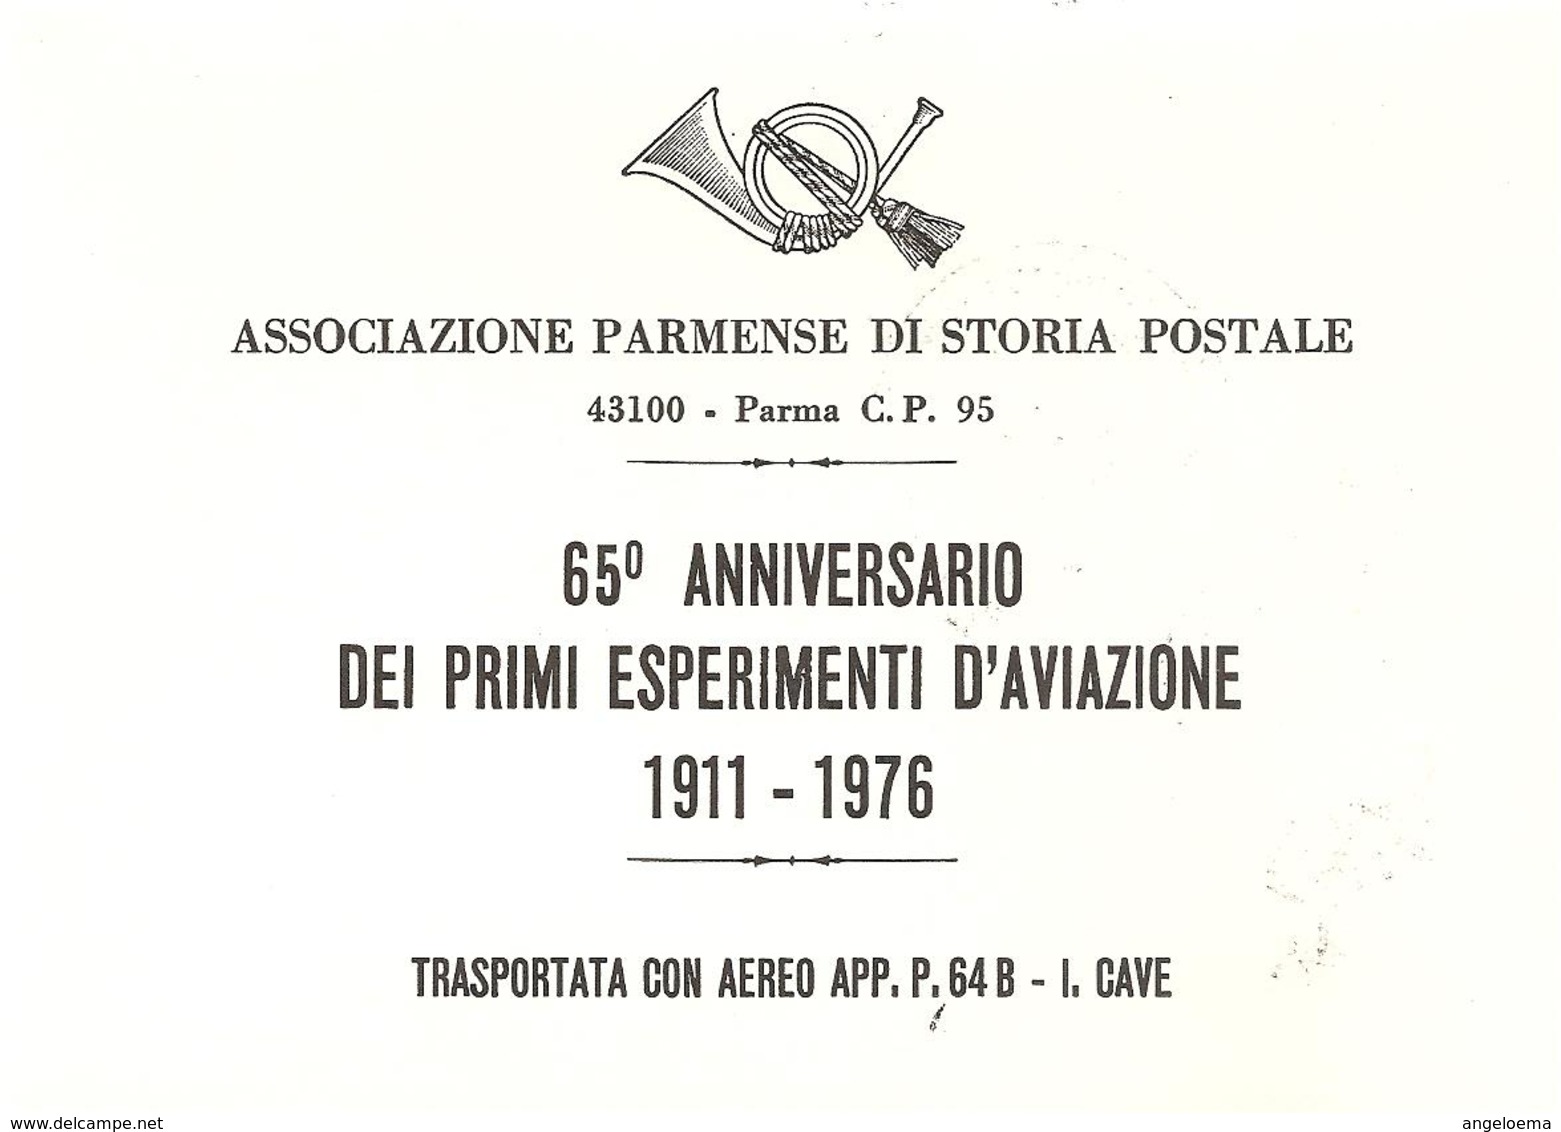 ITALIA - 1976 BOLOGNA, CREMONA, FIRENZE, LA SPEZIA, REGGIO E., SIENA  65° esperimenti aviazione 6 cartoline spec.